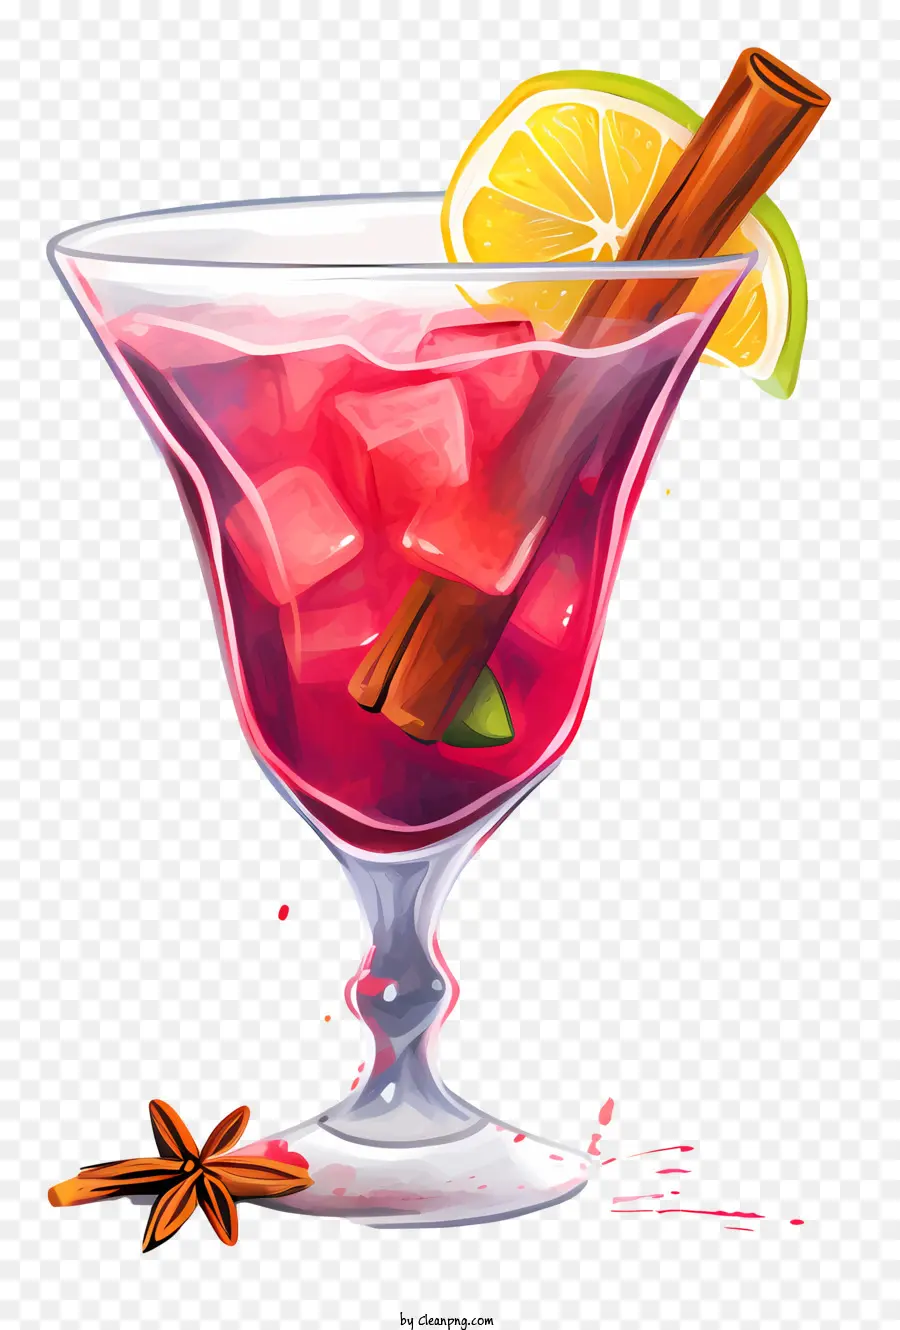 ricetta cocktail cocktail rosso cune di calce spicchi di cannella a pizzico di sale - Cocktail rosso con lime, cannella, sale e lime